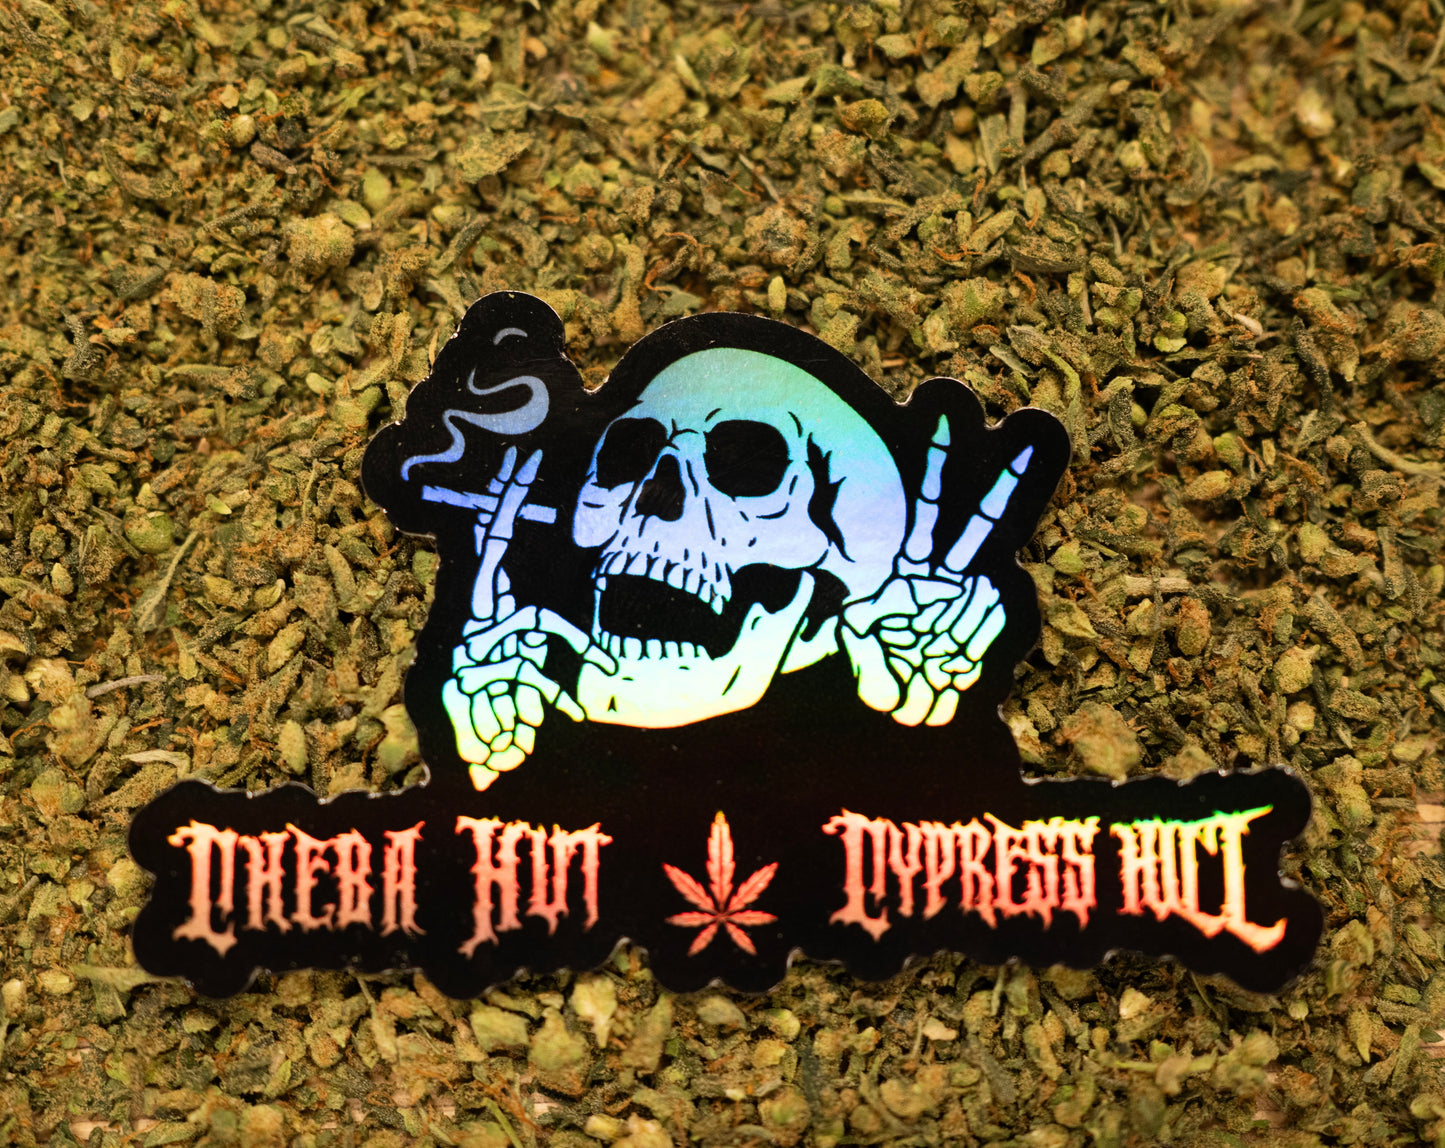 Cheba Hut x Cypress Hill Sticker